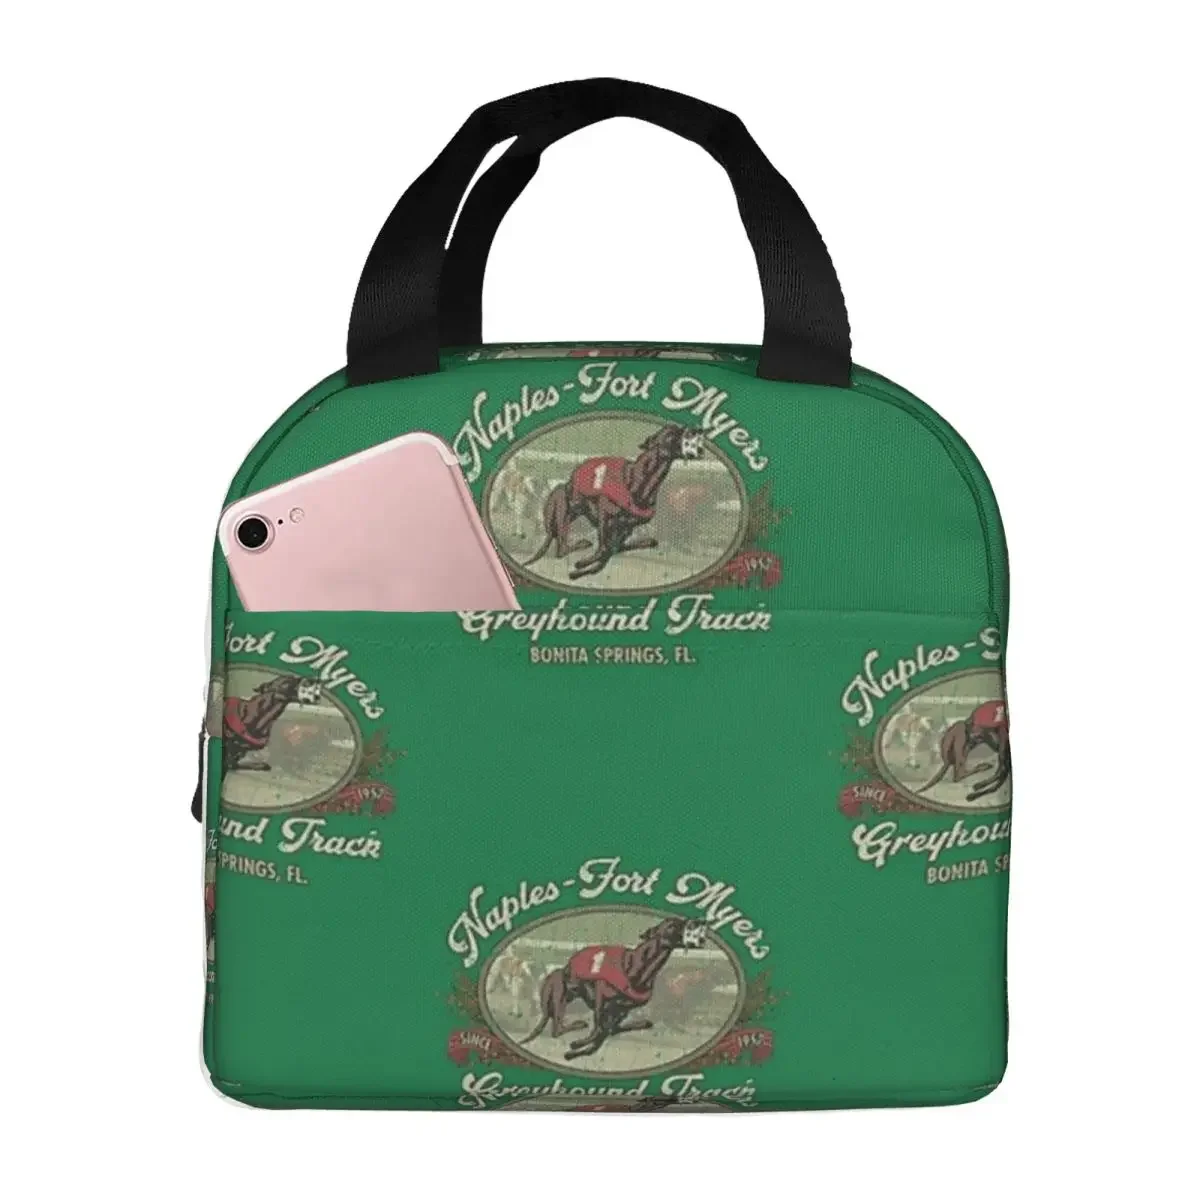 Naples-Fort Myers Greyhound Track 1957 Изолированные пакеты для ланча, сумки для пикника, термоохладитель, ланч-бокс, сумка для ланча для женщин на работу